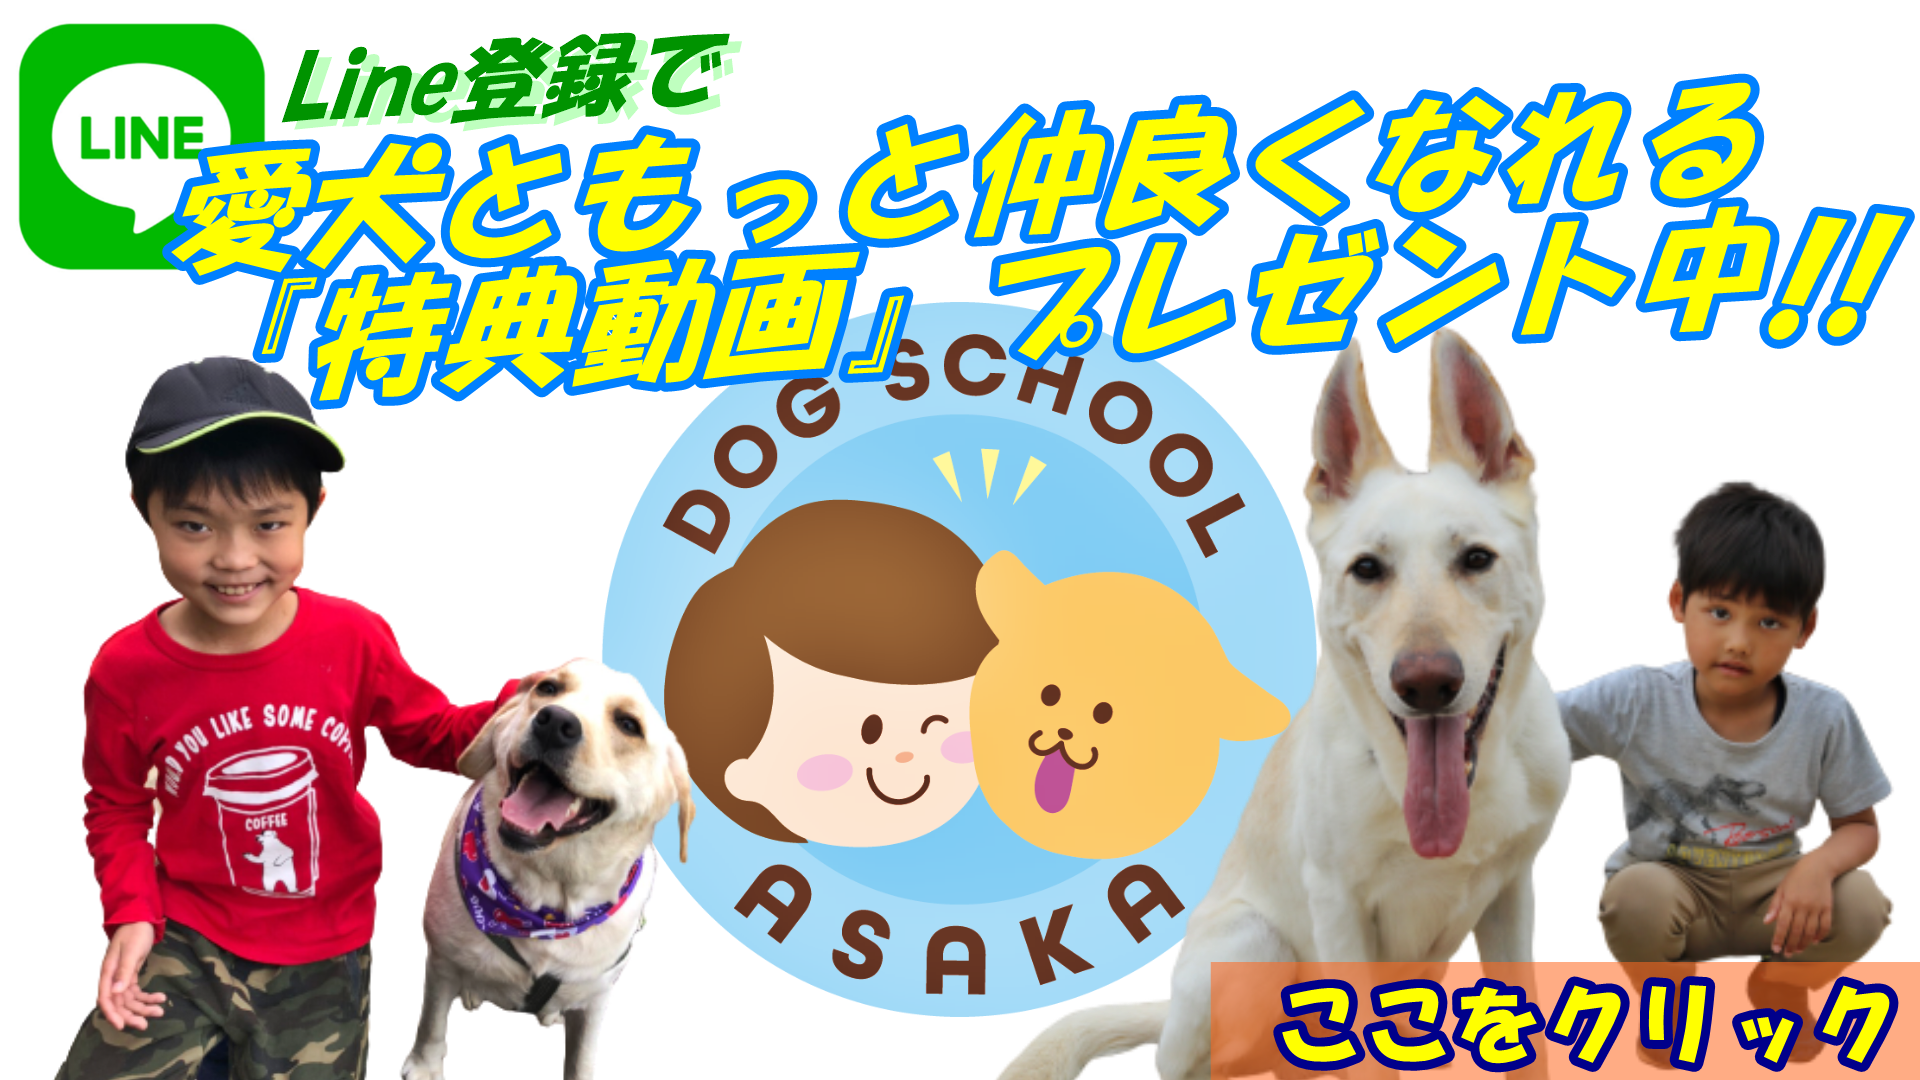 大阪 堺で愛犬と楽しく学びたいなら、20年の実績があるトレーナーがいるドッグトレーニングスクール『いぬの学校あさか』にご相談ください。